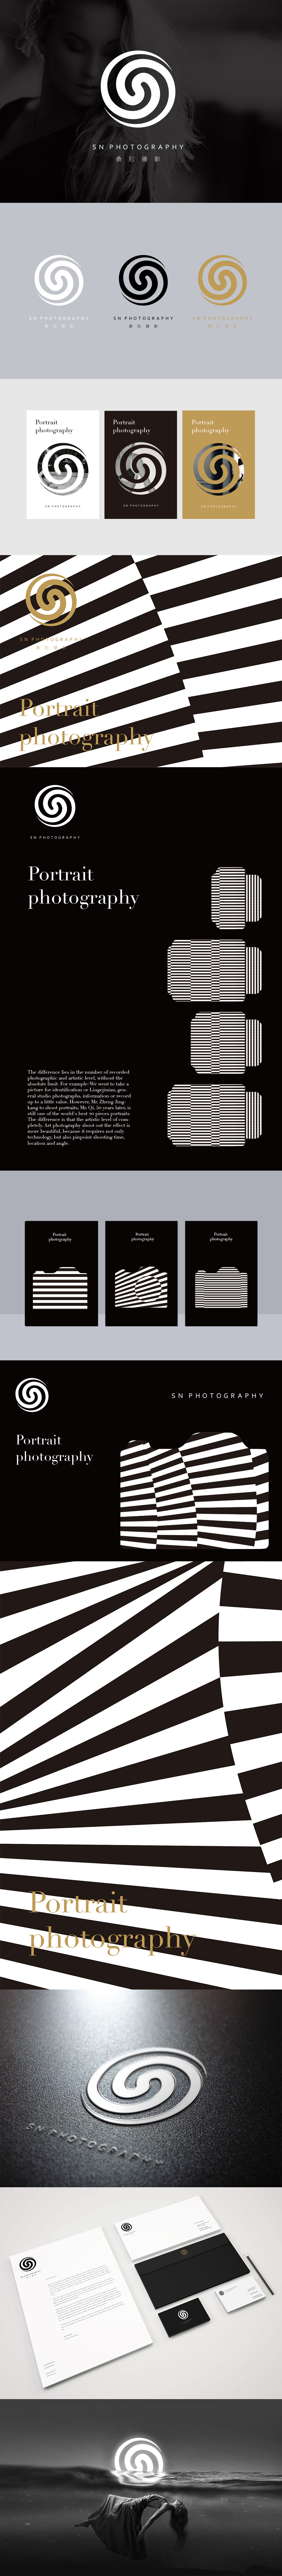 桑尼摄影 品牌设计图0